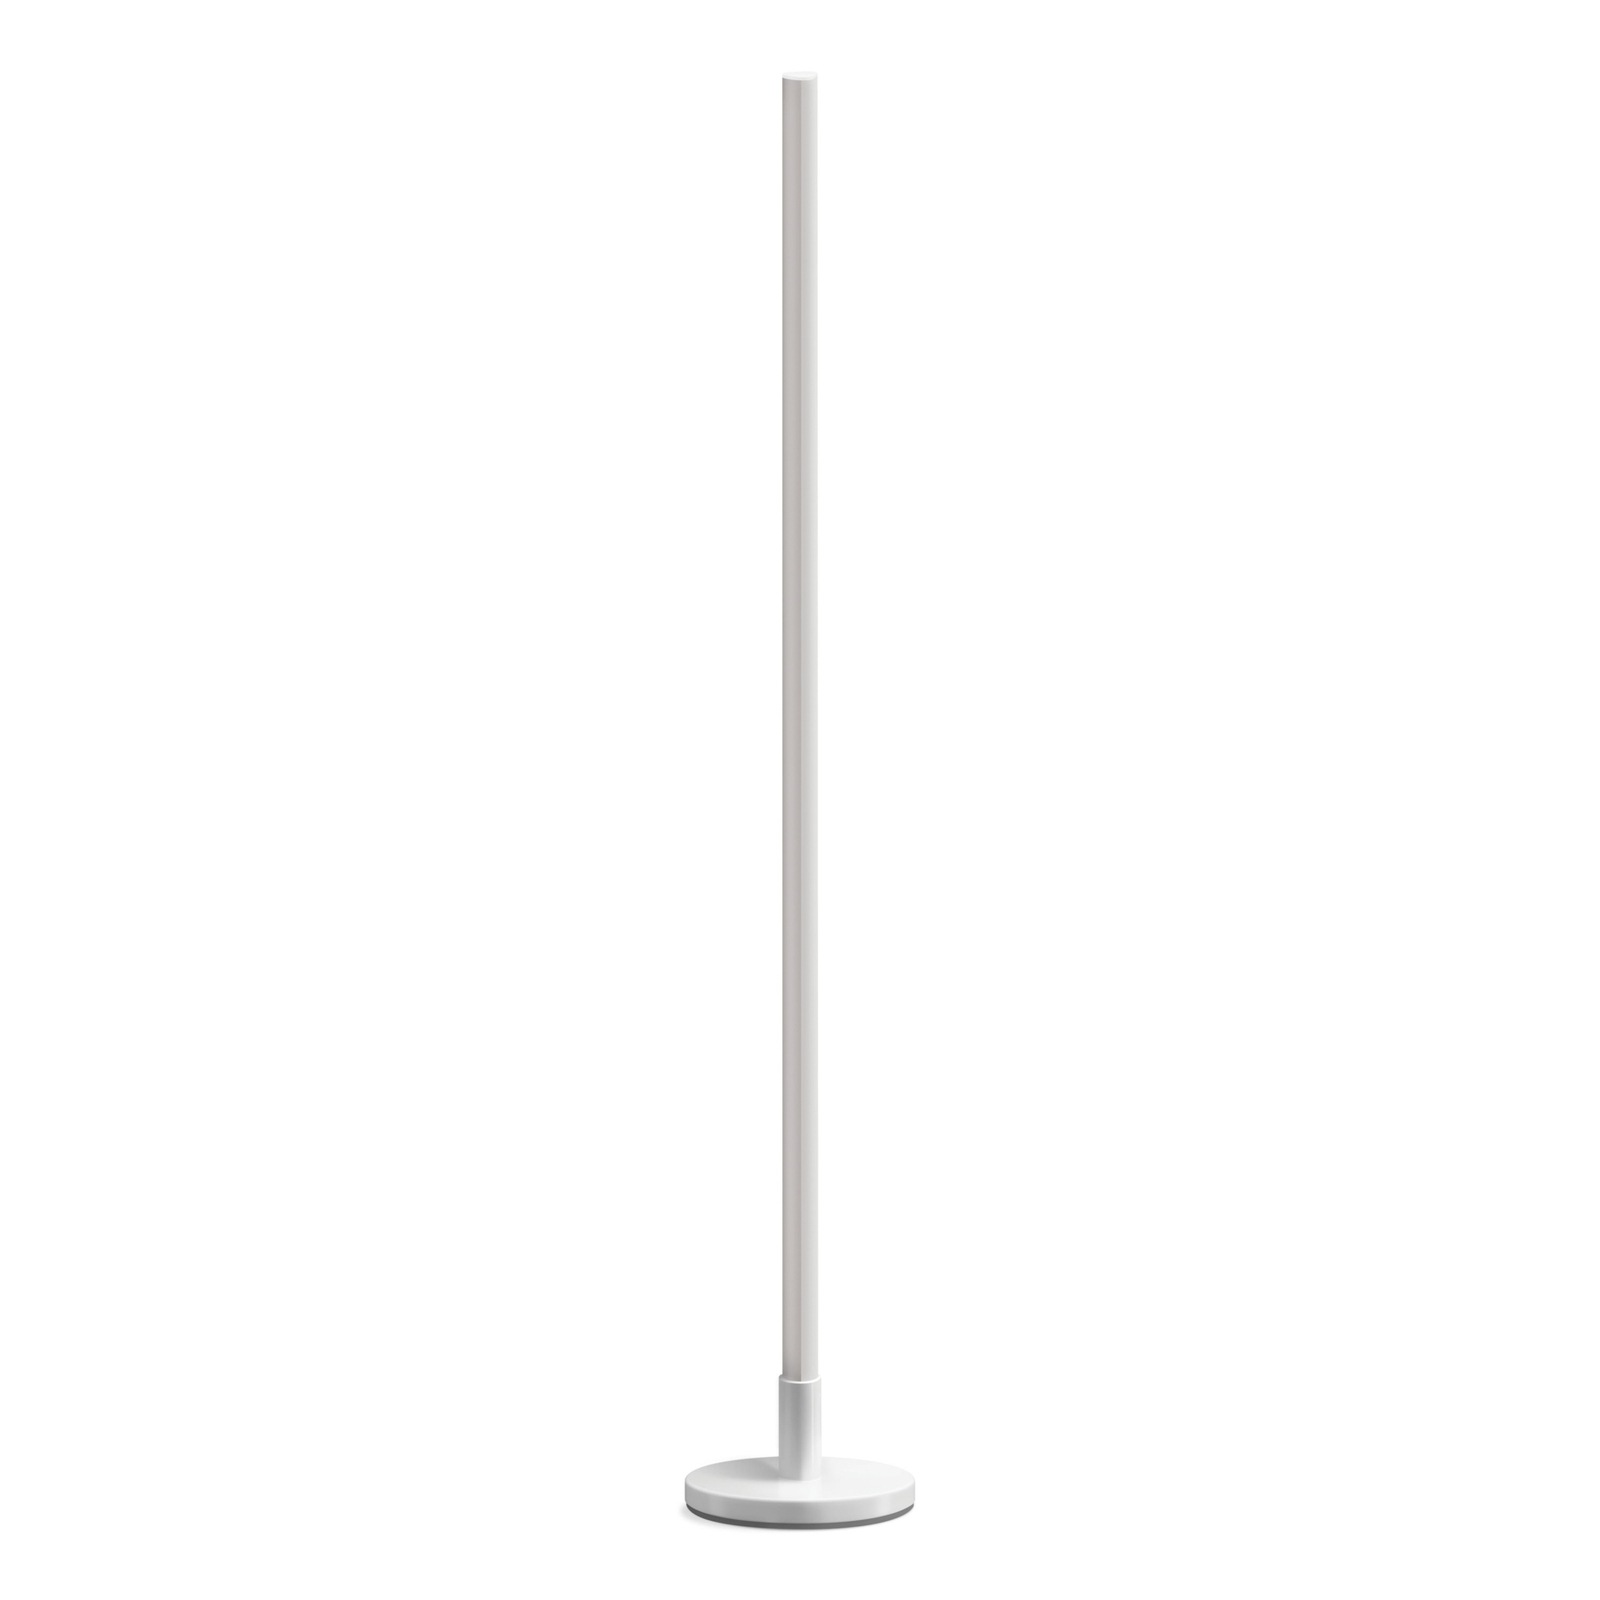 LED stojací lampa WiZ Pole, laditelná bílá a barevná